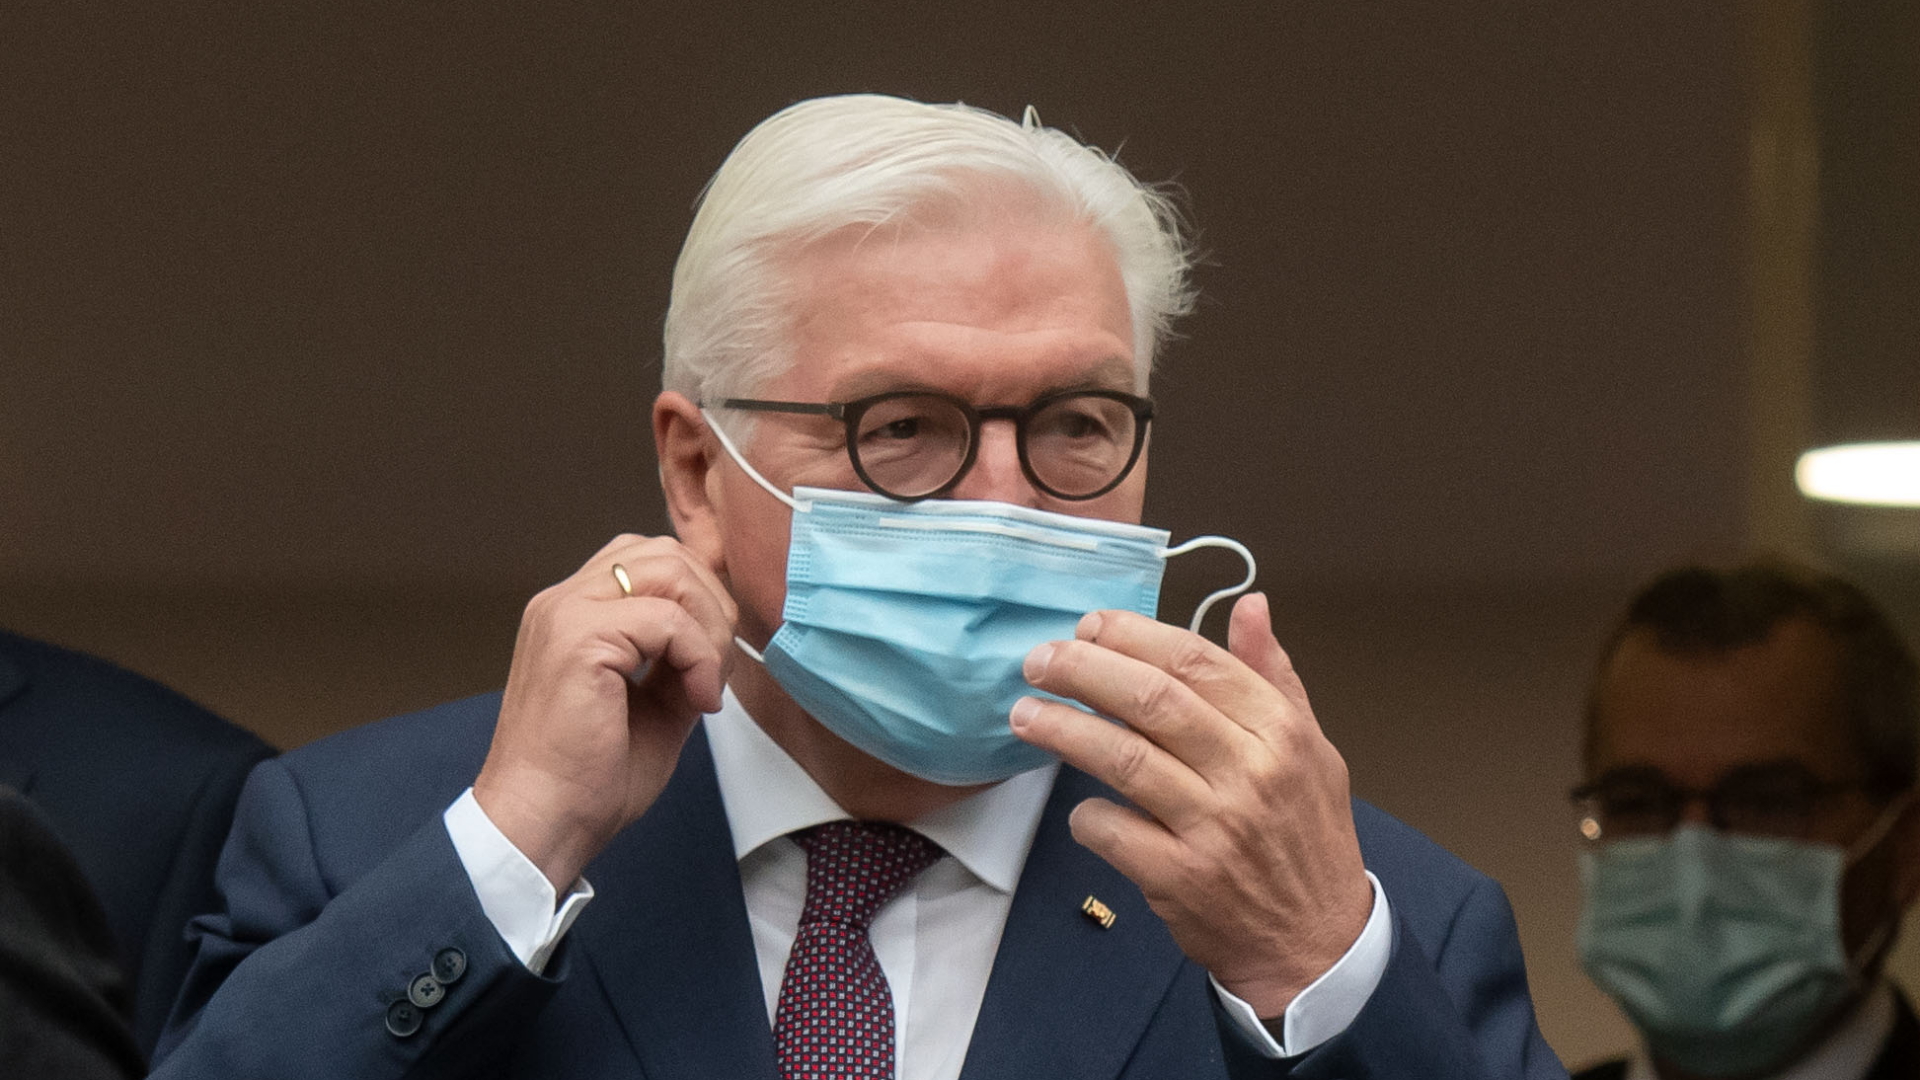 Bundespräsident Frank-Walter Steinmeier trägt einen Mund-Nasen-Schutz | dpa